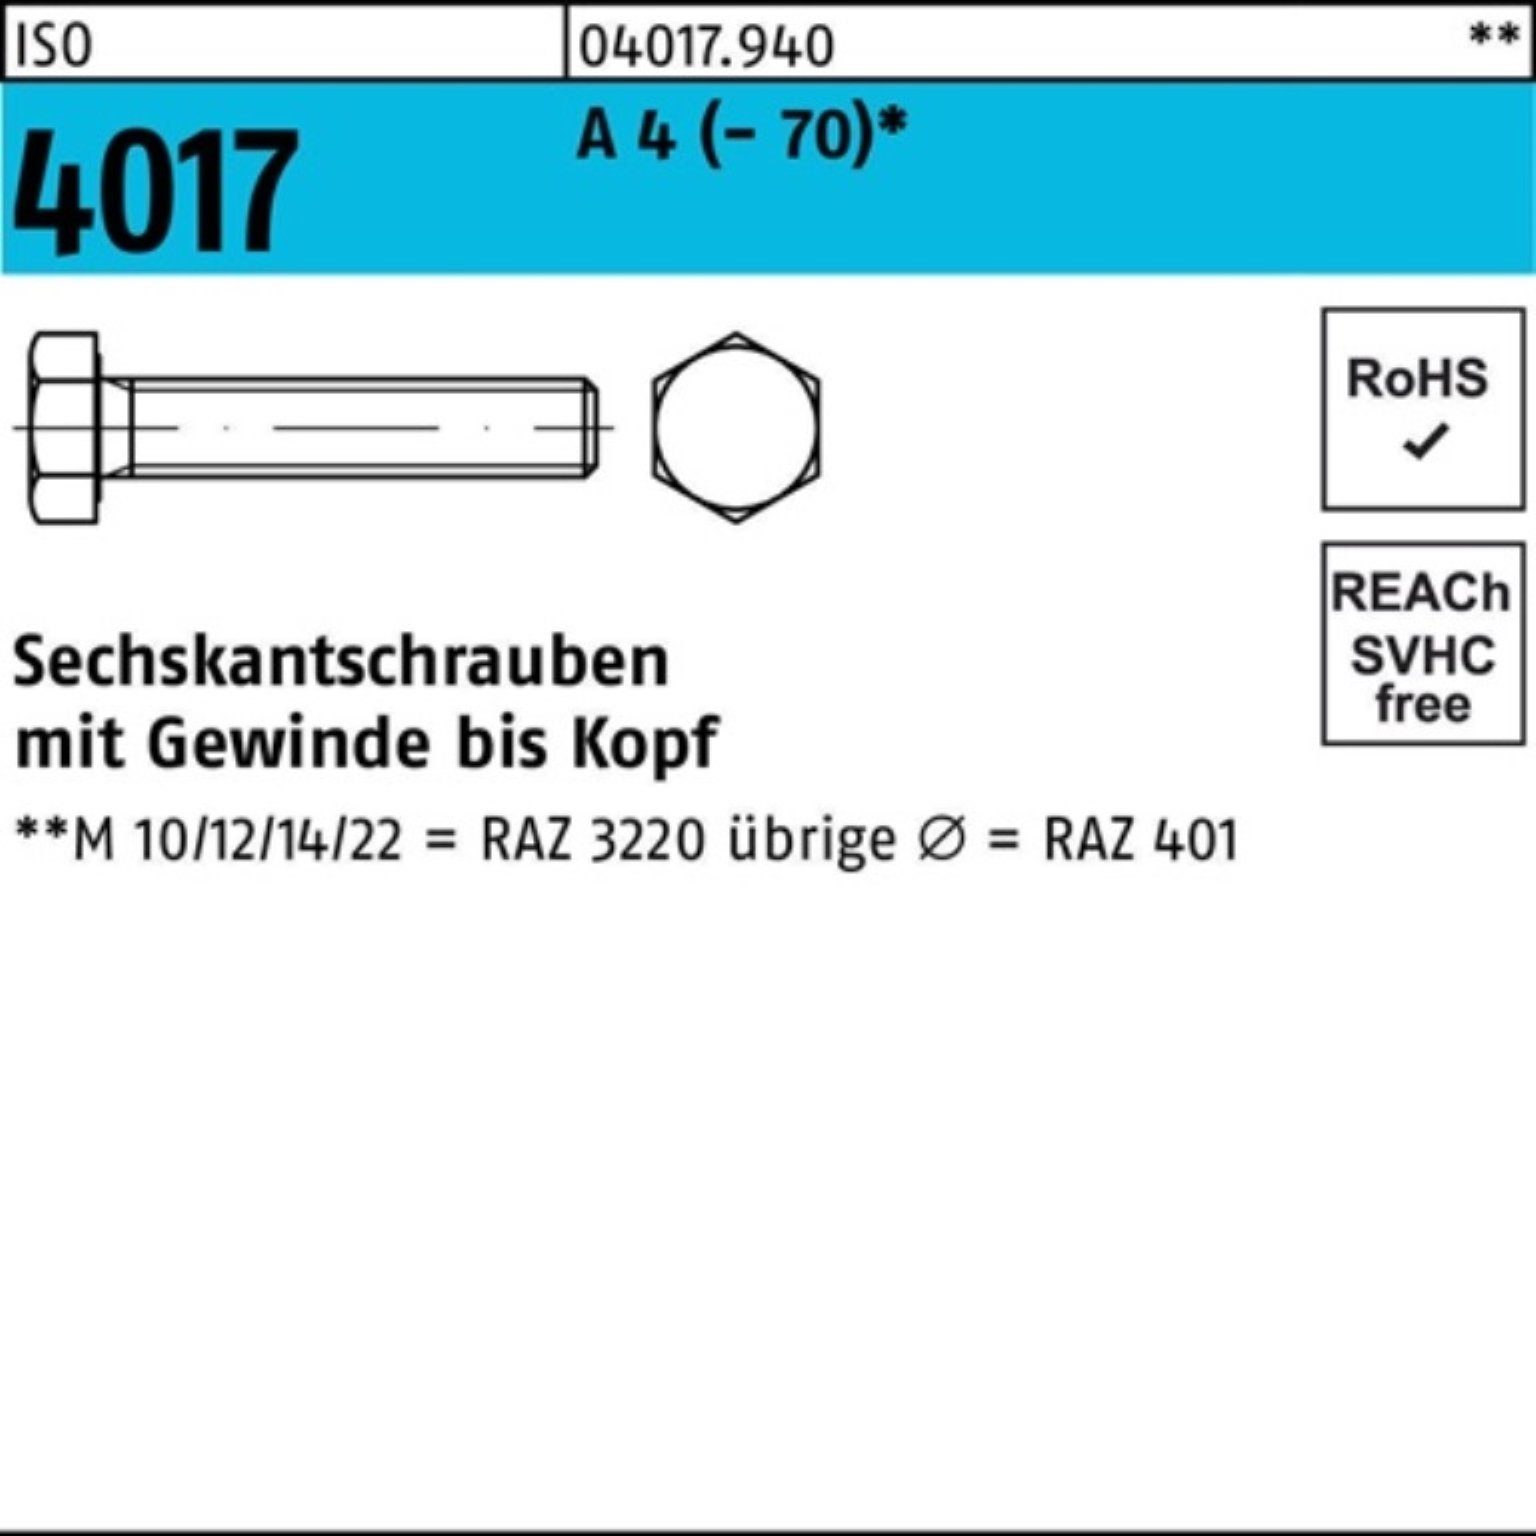 Stück Bufab 12 Sechskantschraube VG M6x A 4 100 Pack Sechskantschraube (70) 100er 4017 ISO